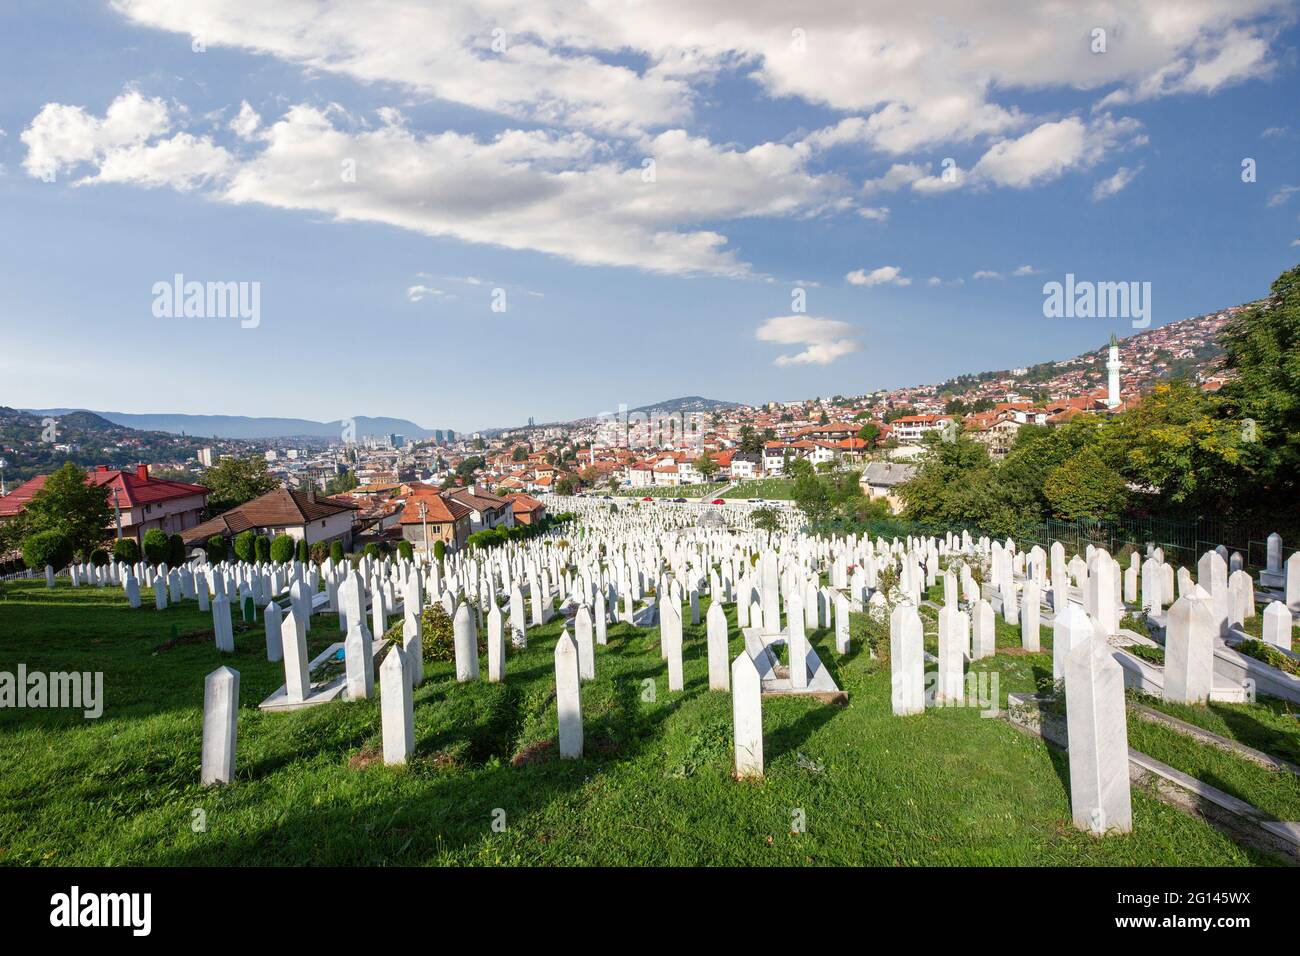 Cimitero musulmano di Kovaci dedicato alle vittime della guerra bosniaca, a Sarajevo, Bosnia-Erzegovina. Foto Stock